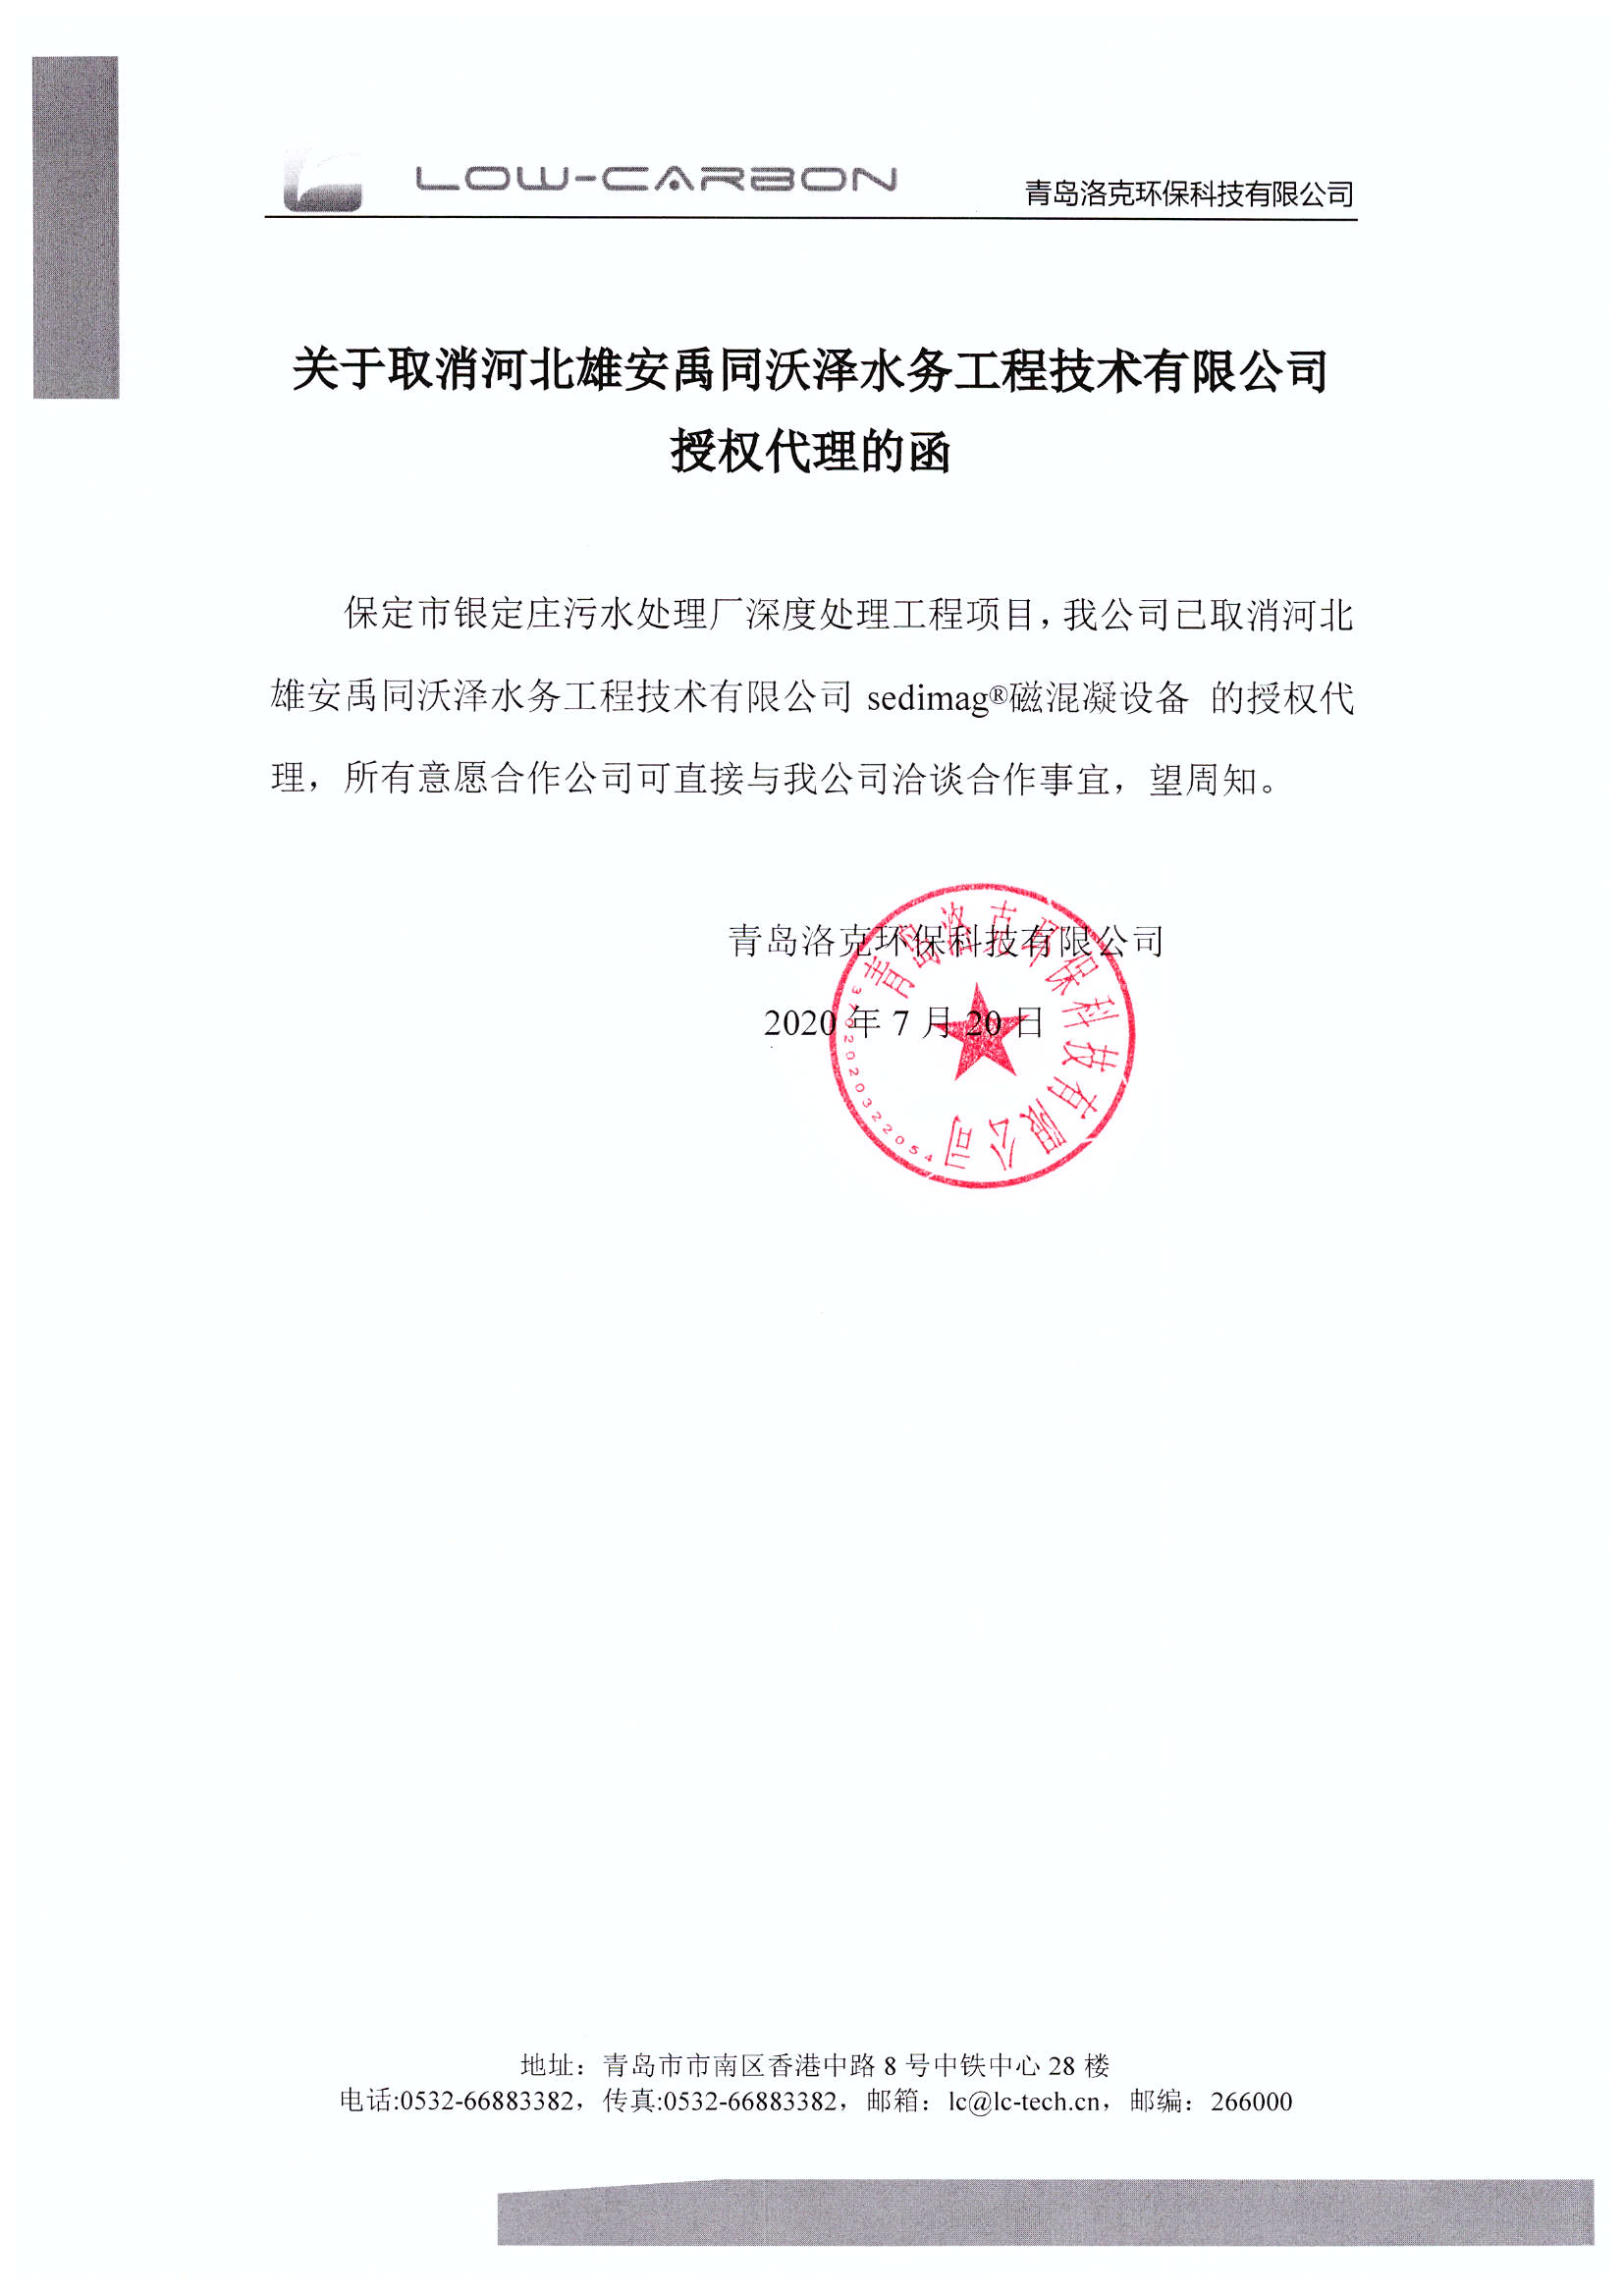 关于取消河北雄安禹同沃泽水务工程技术有限公司授权代理的函